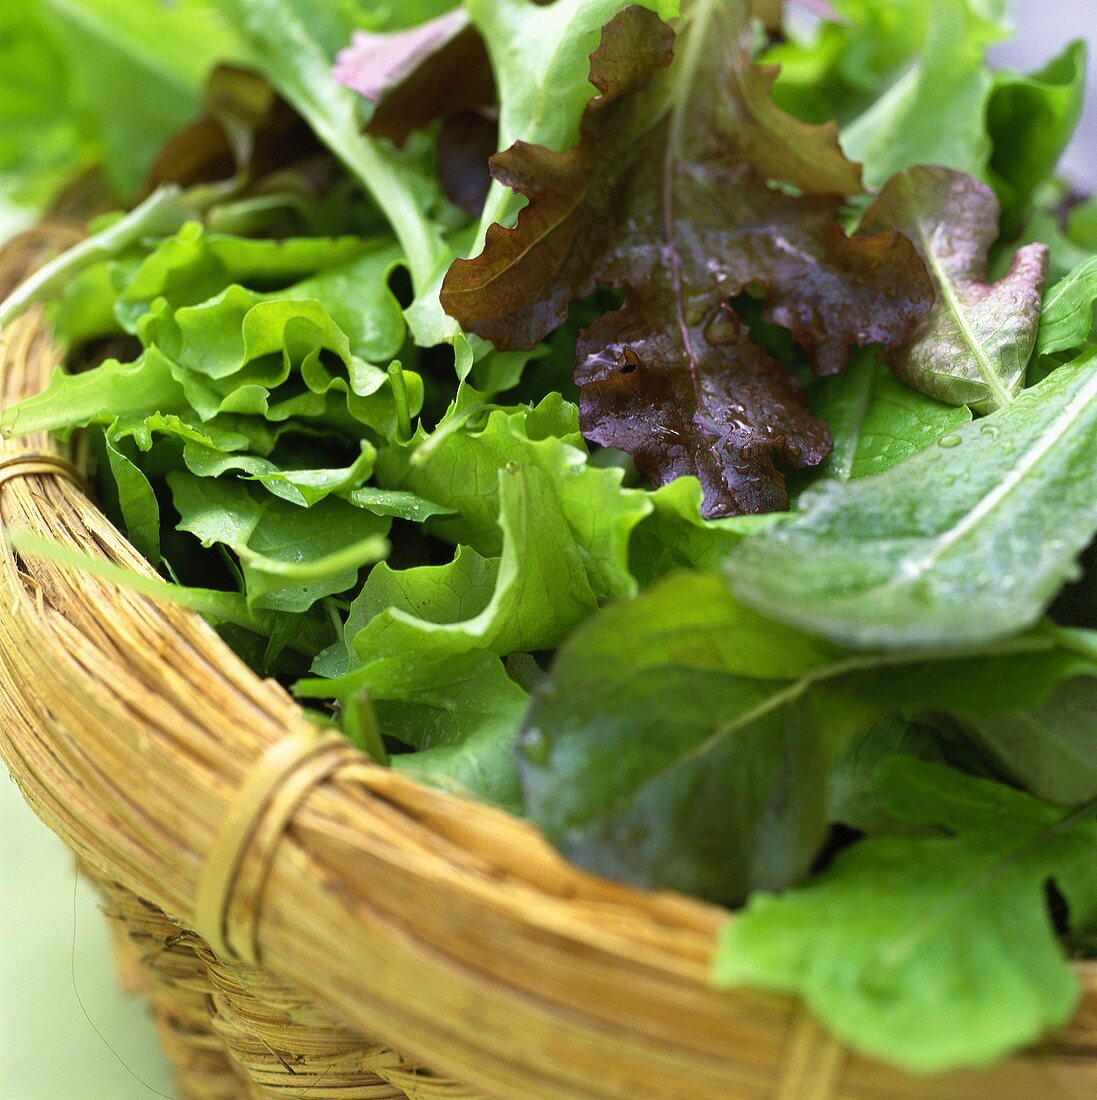 Fresh lettuce leaves in basket